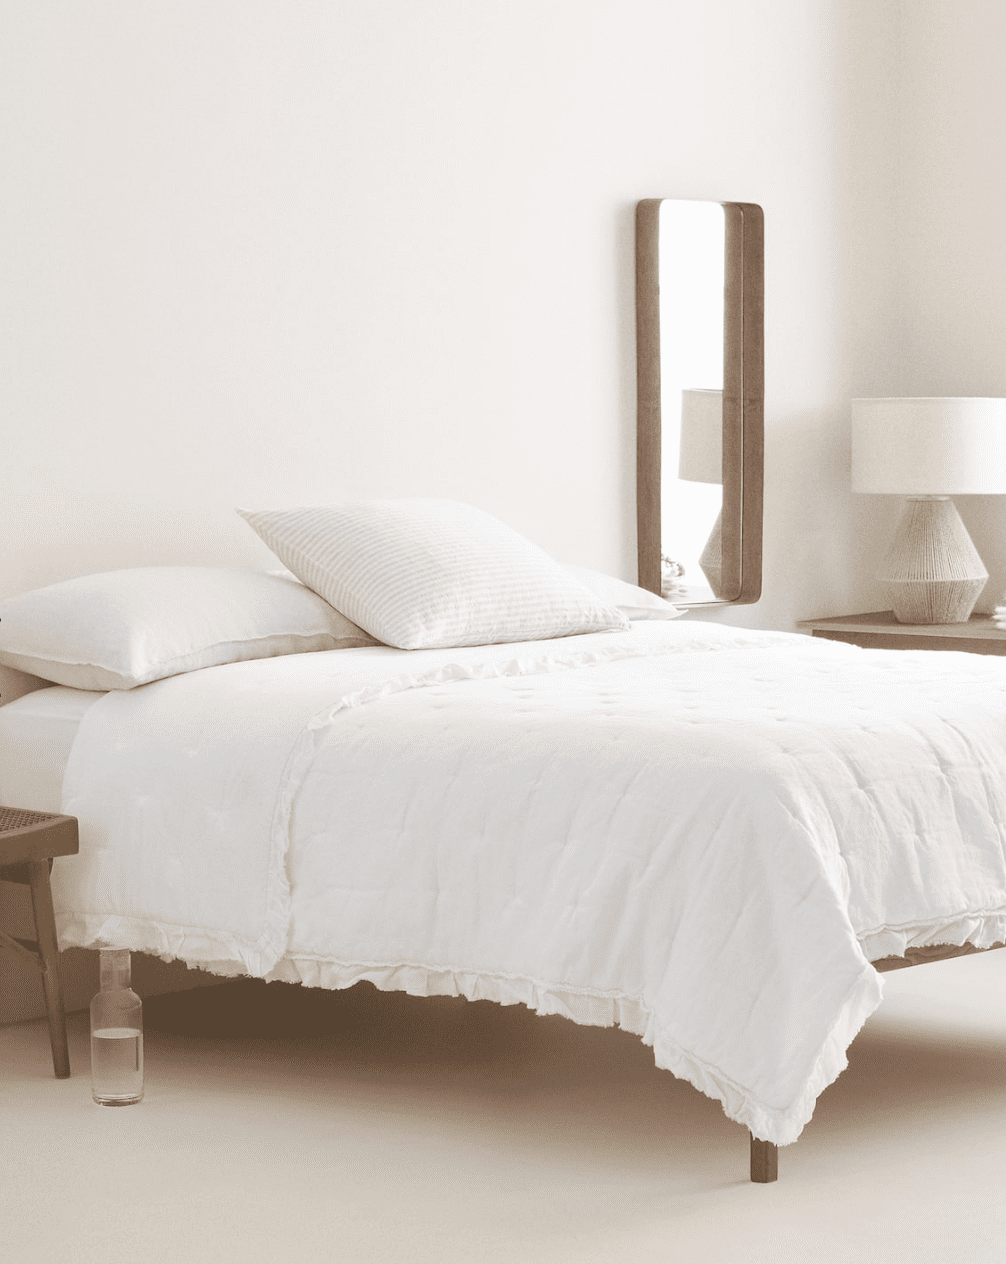 Zara Home Bedding Spring 2020 